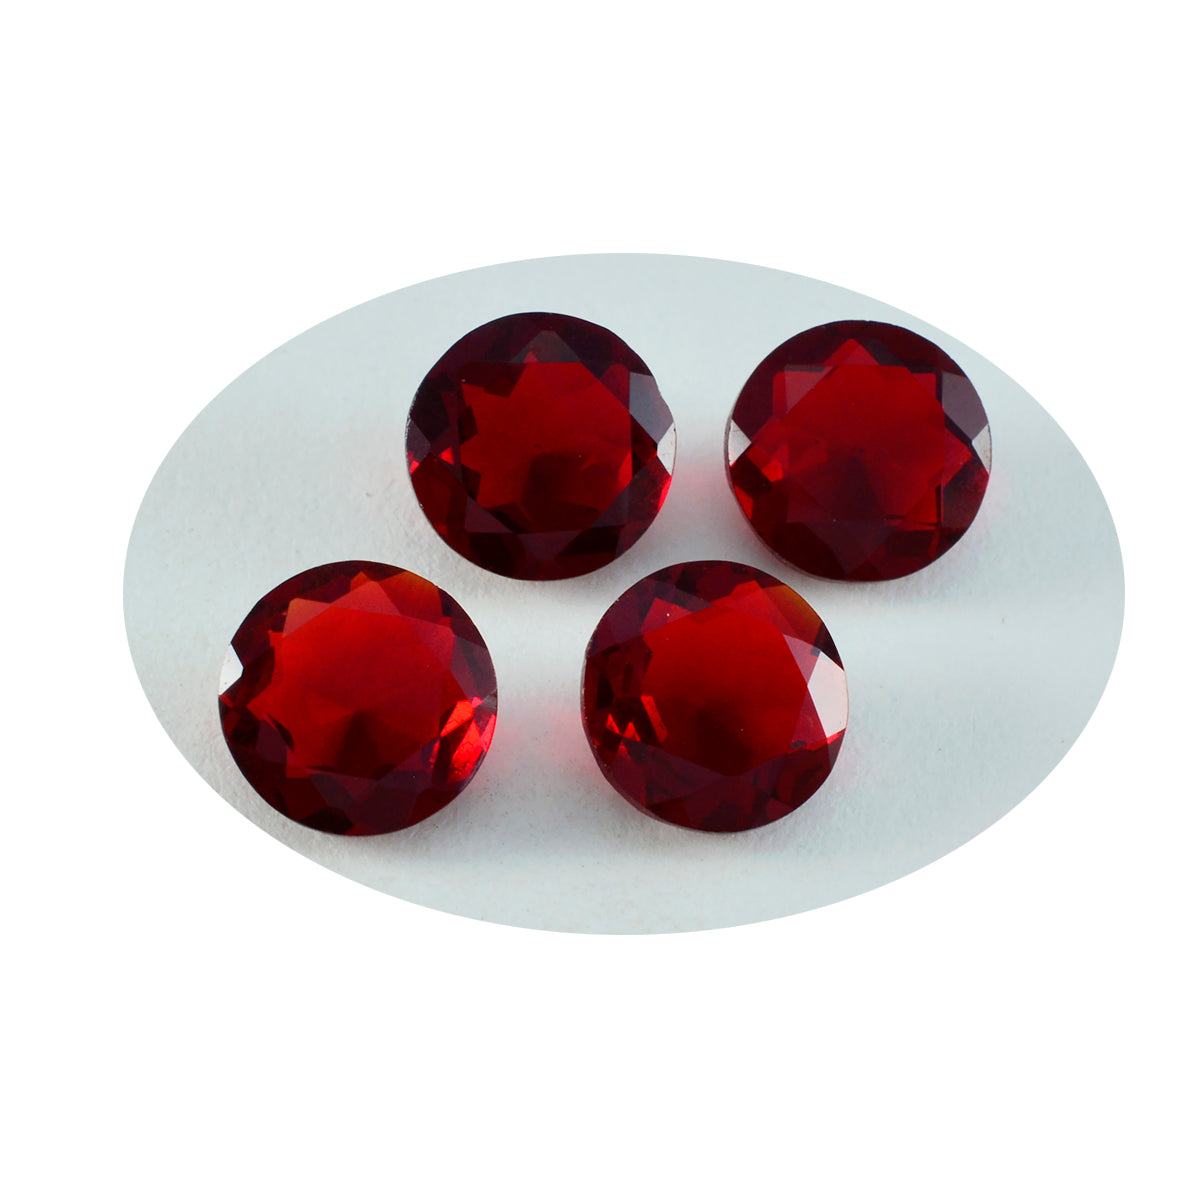 riyogems 1шт красный рубин cz ограненный 11x11 мм круглая форма красивые качественные драгоценные камни